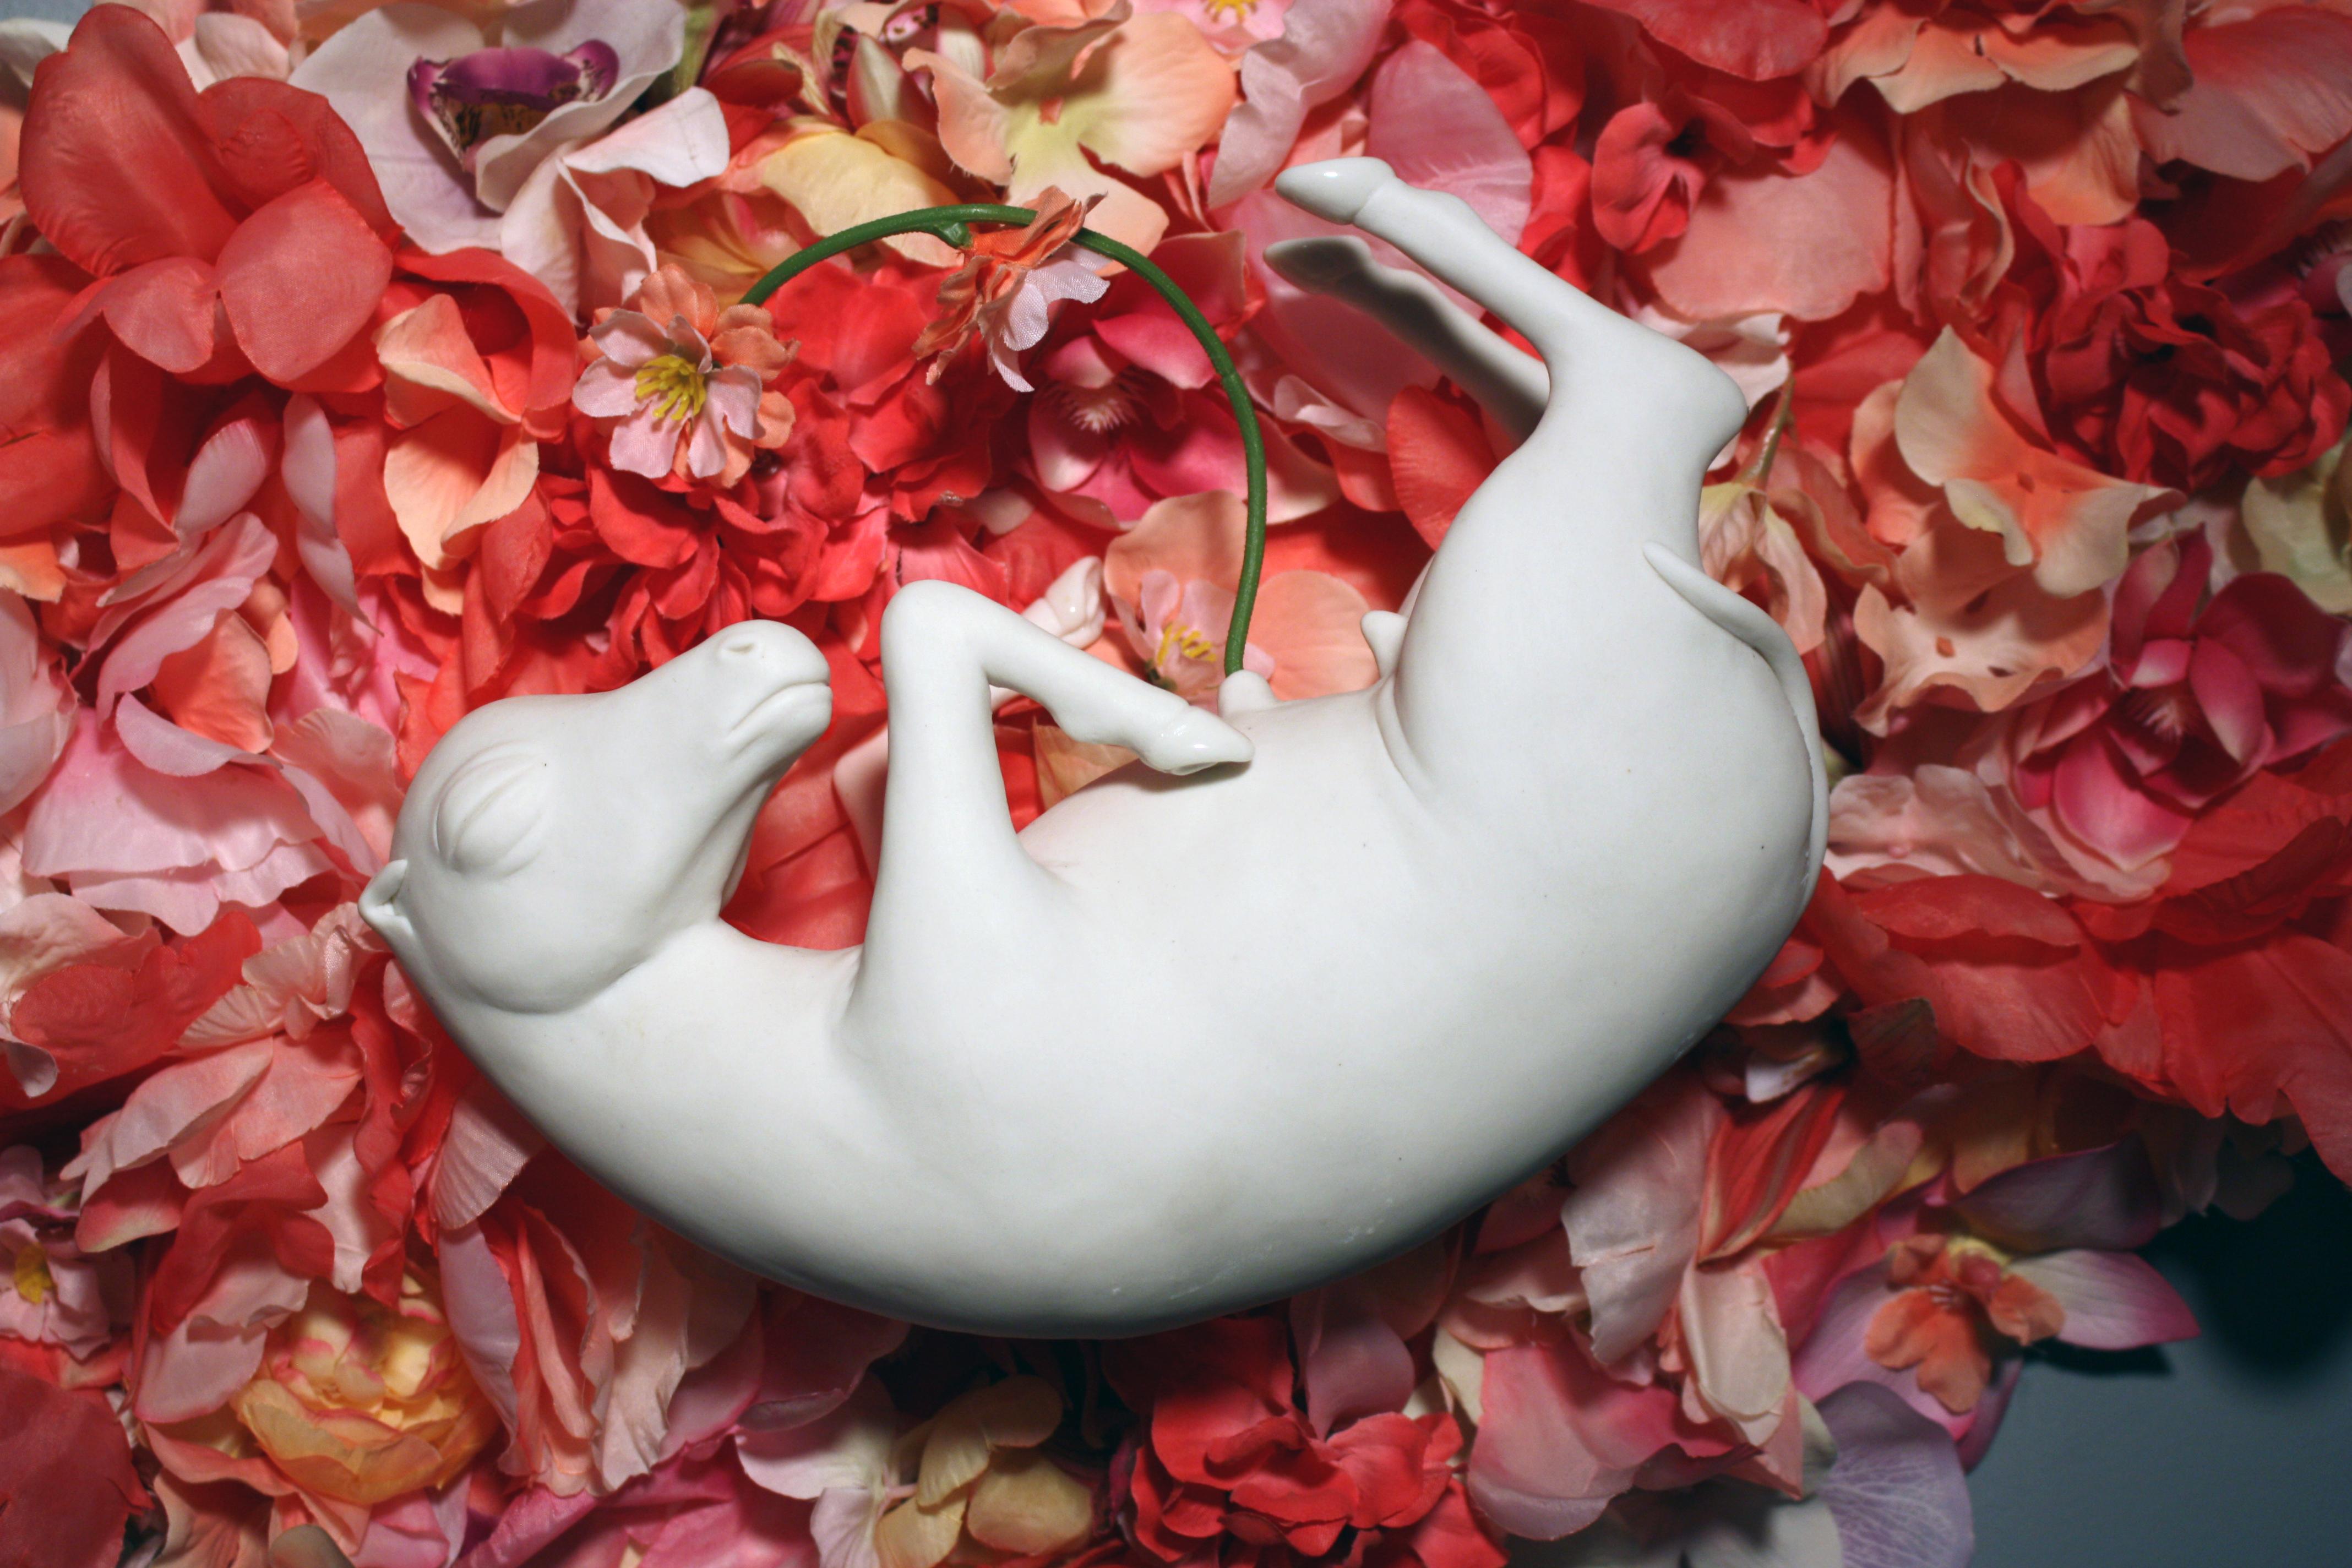 Cette sculpture murale de cheval en porcelaine est fabriquée à la main, sans utiliser de moules, par l'artiste new-yorkaise Bethany Krull. Elle flotte paisiblement dans un nid de fleurs en soie rose. 